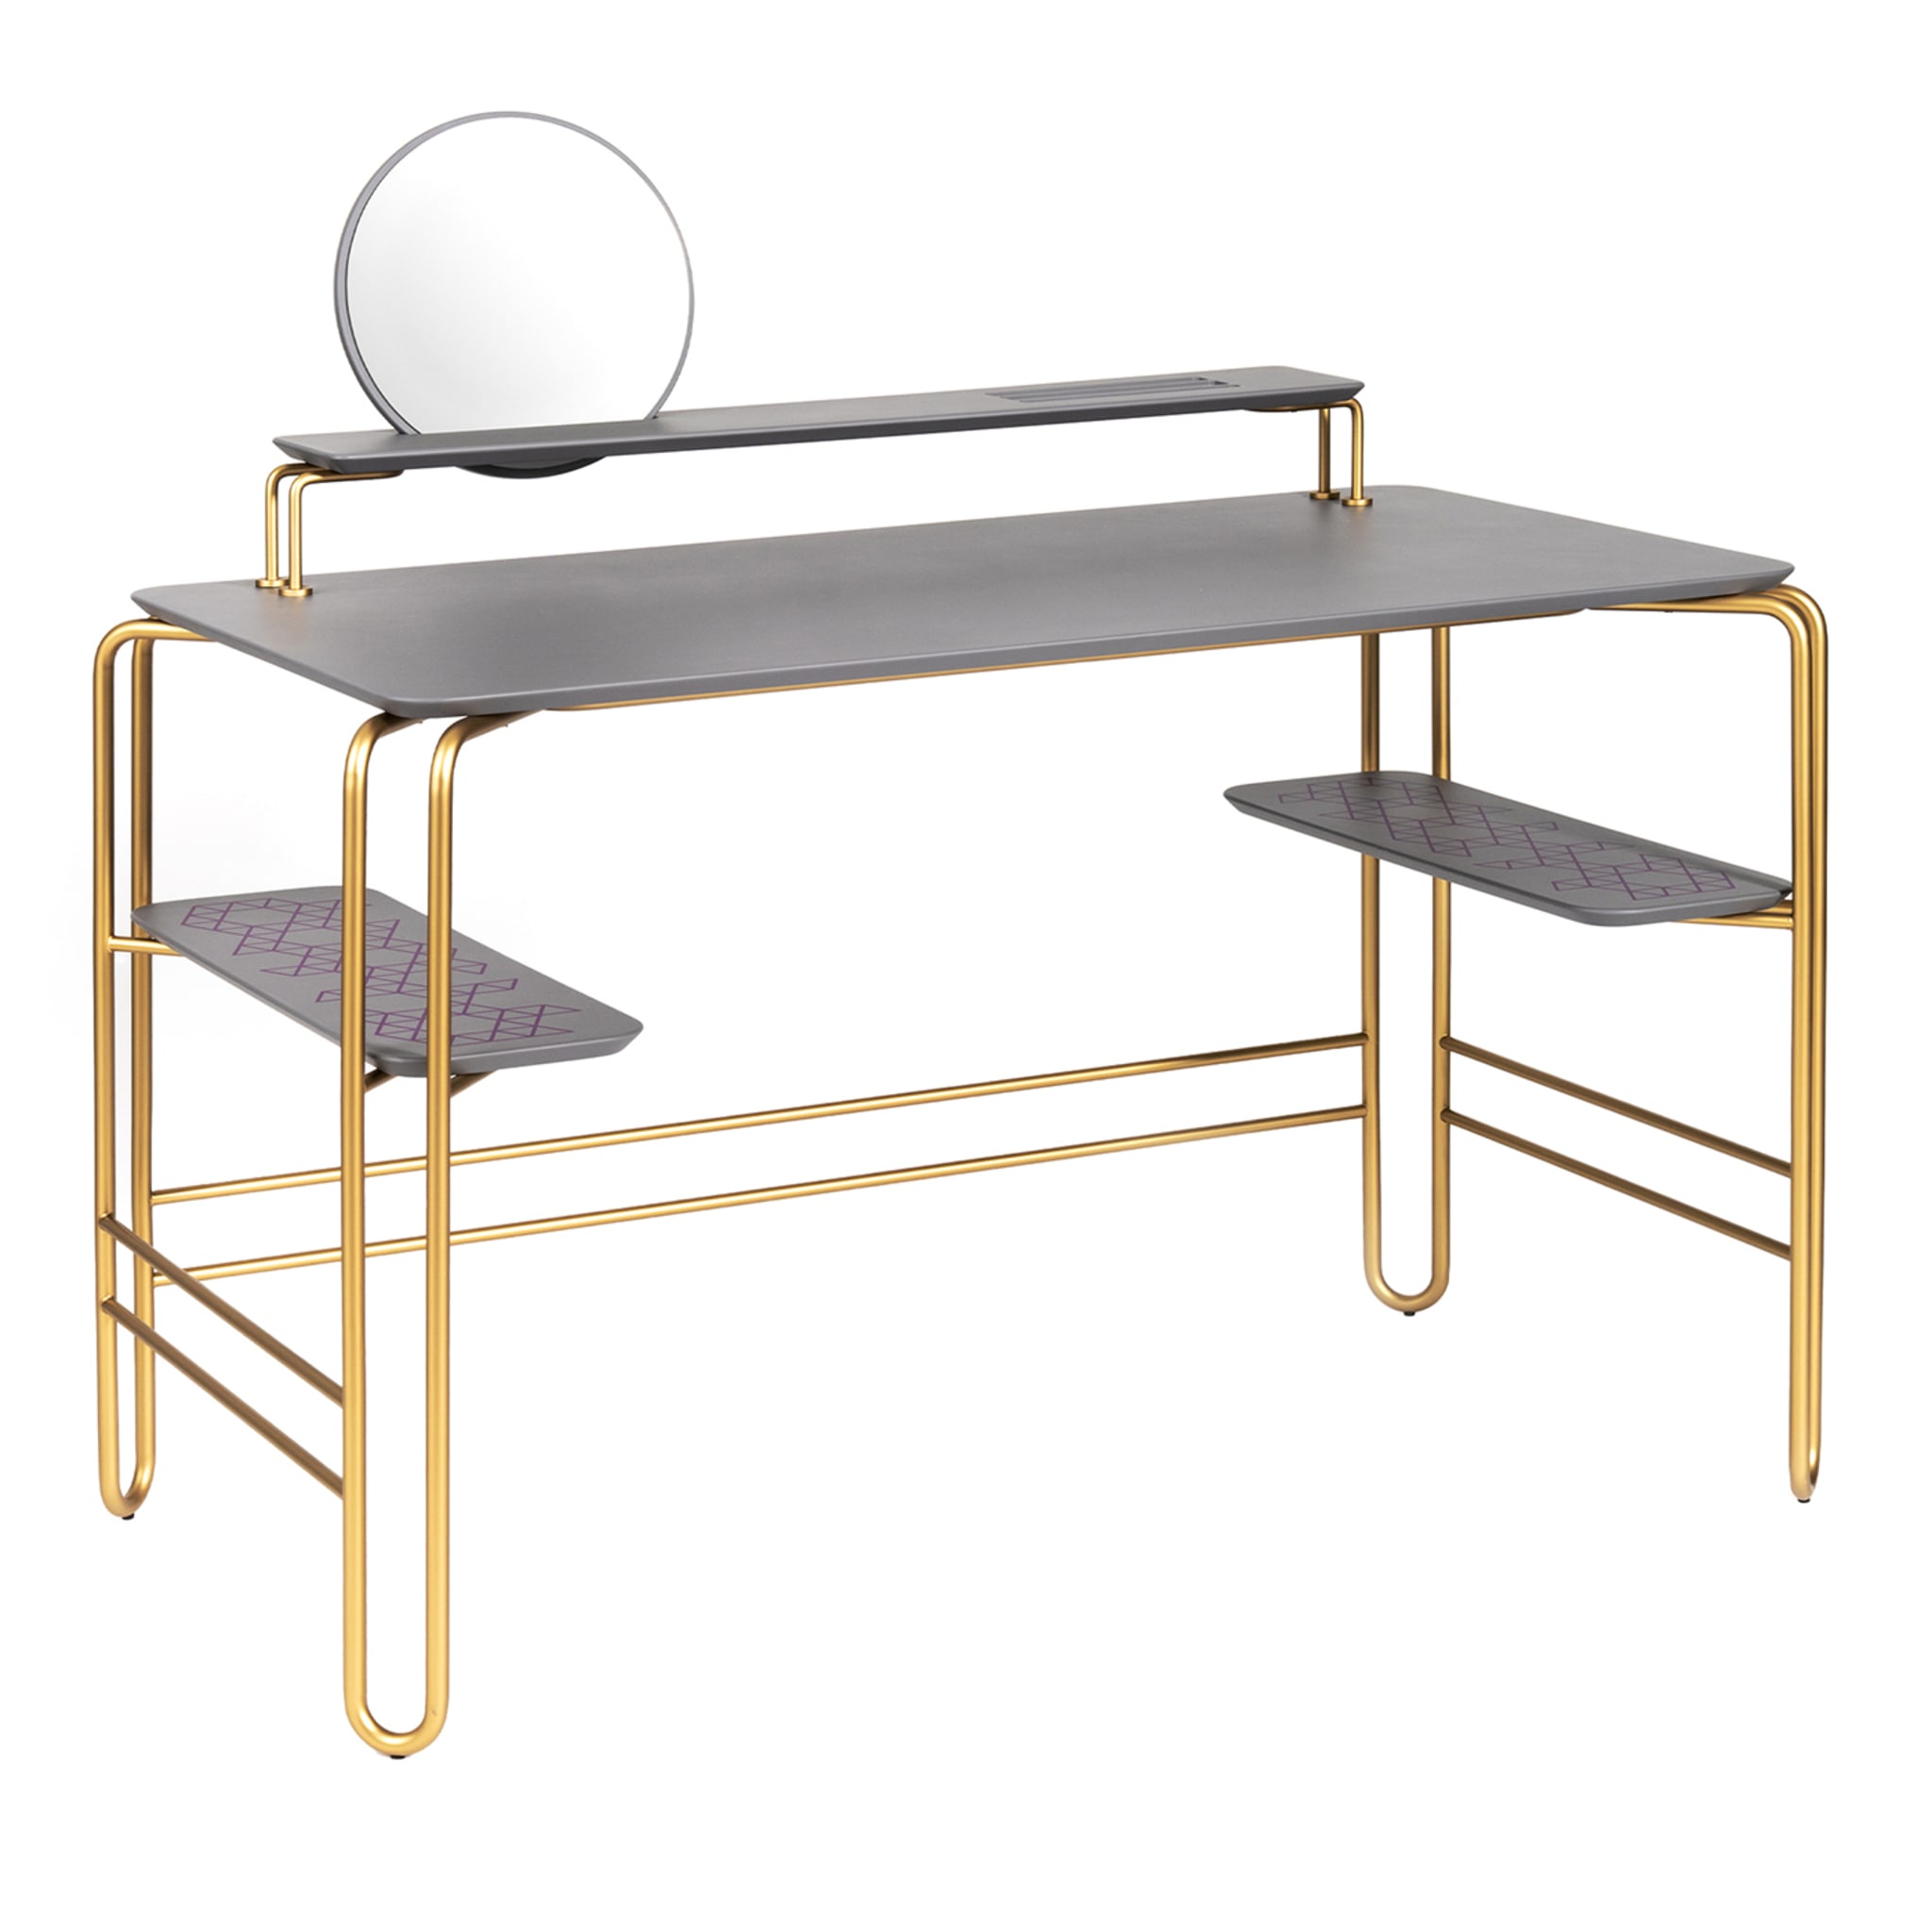 Grimilde Gray and Brass Vanity Desk - Main view